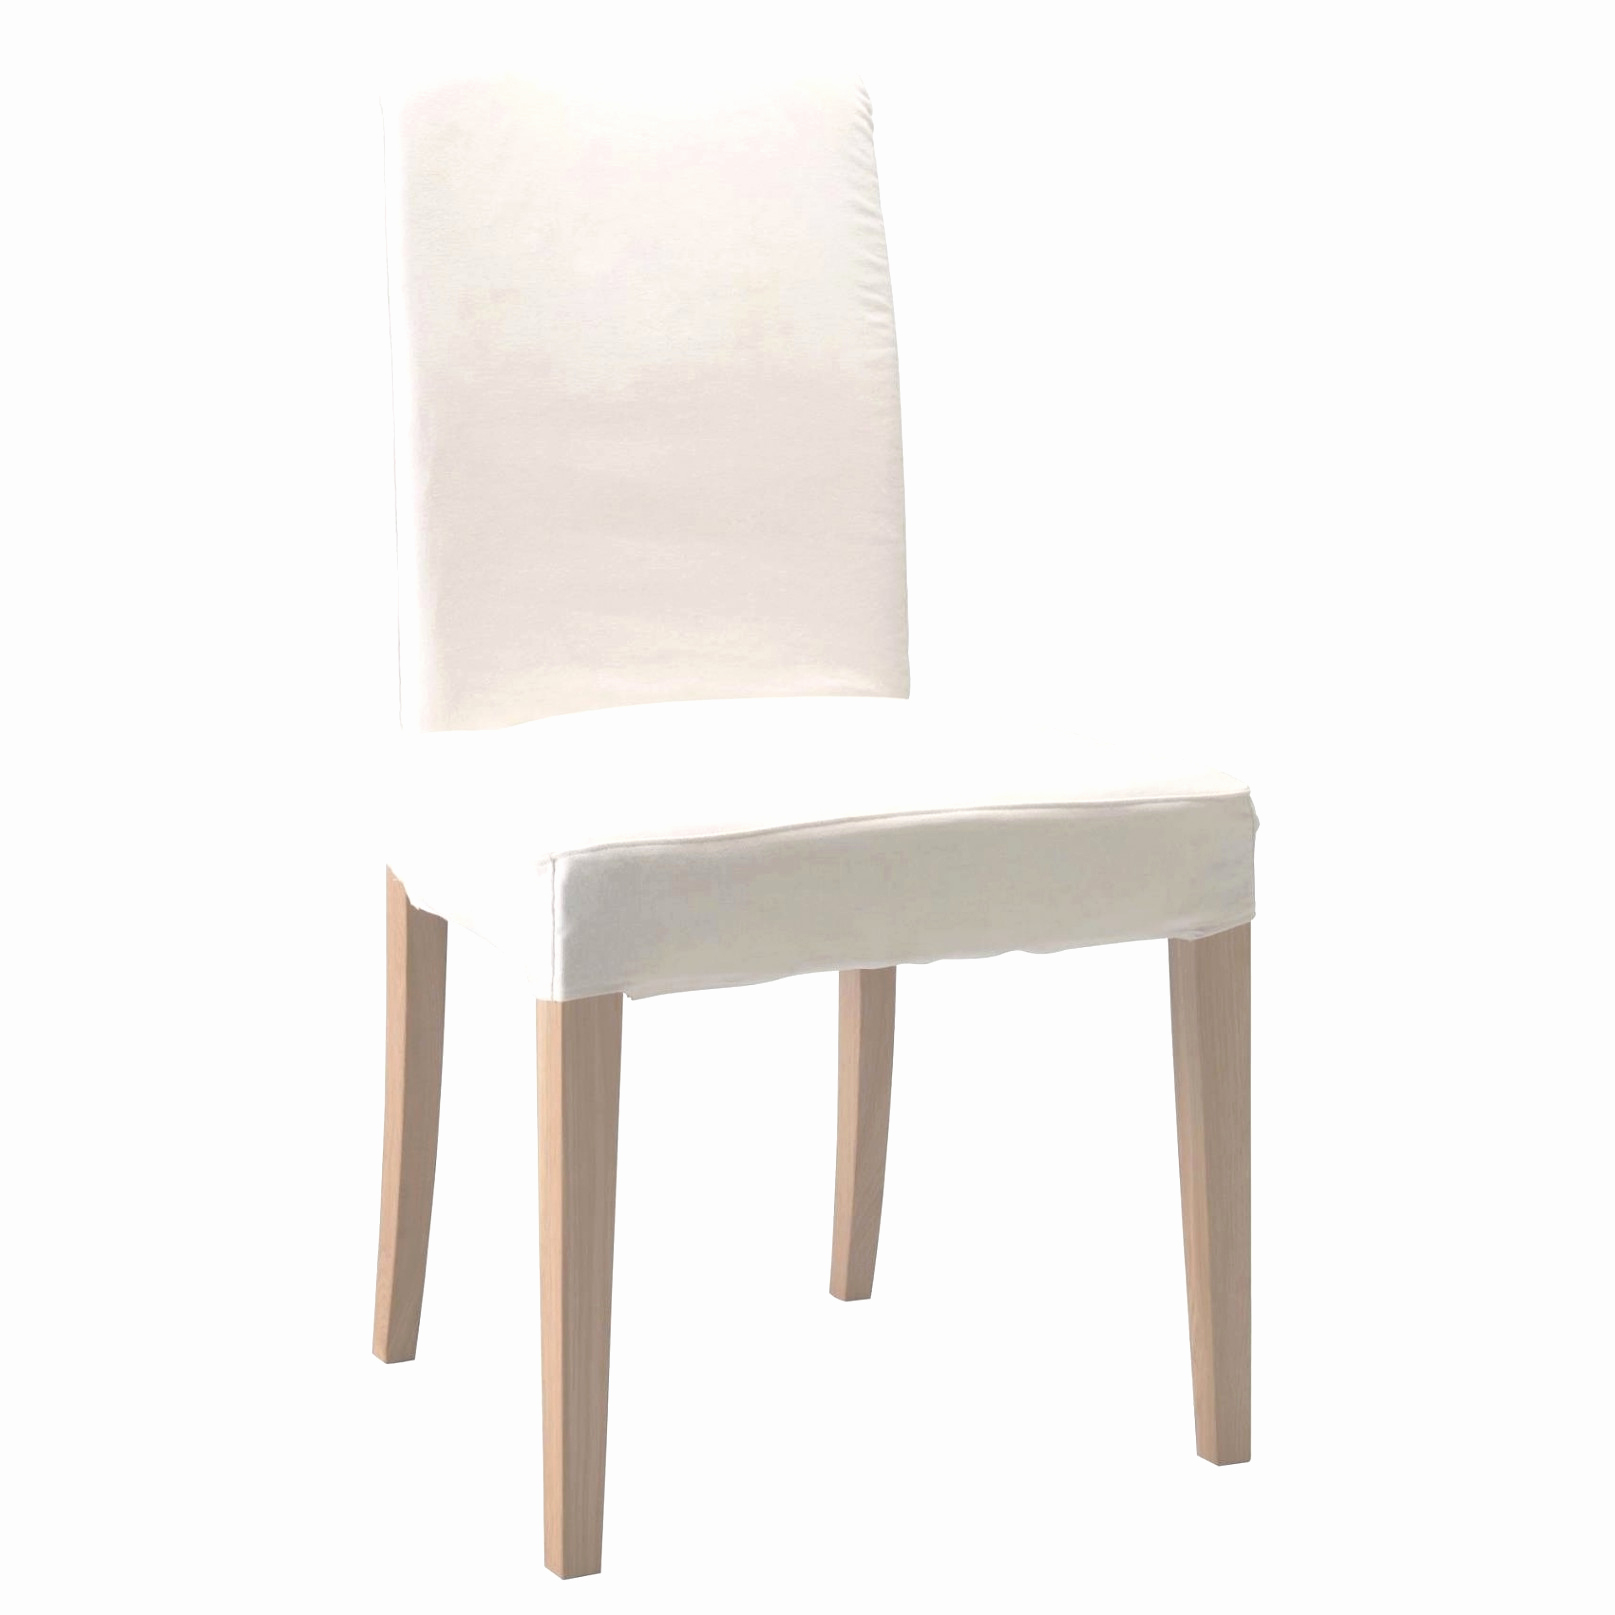 fauteuil osier conforama beau salon salle a manger charmant fauteuil osier conforama luxe chaise blanche jardin pas cher magnifique chaises of